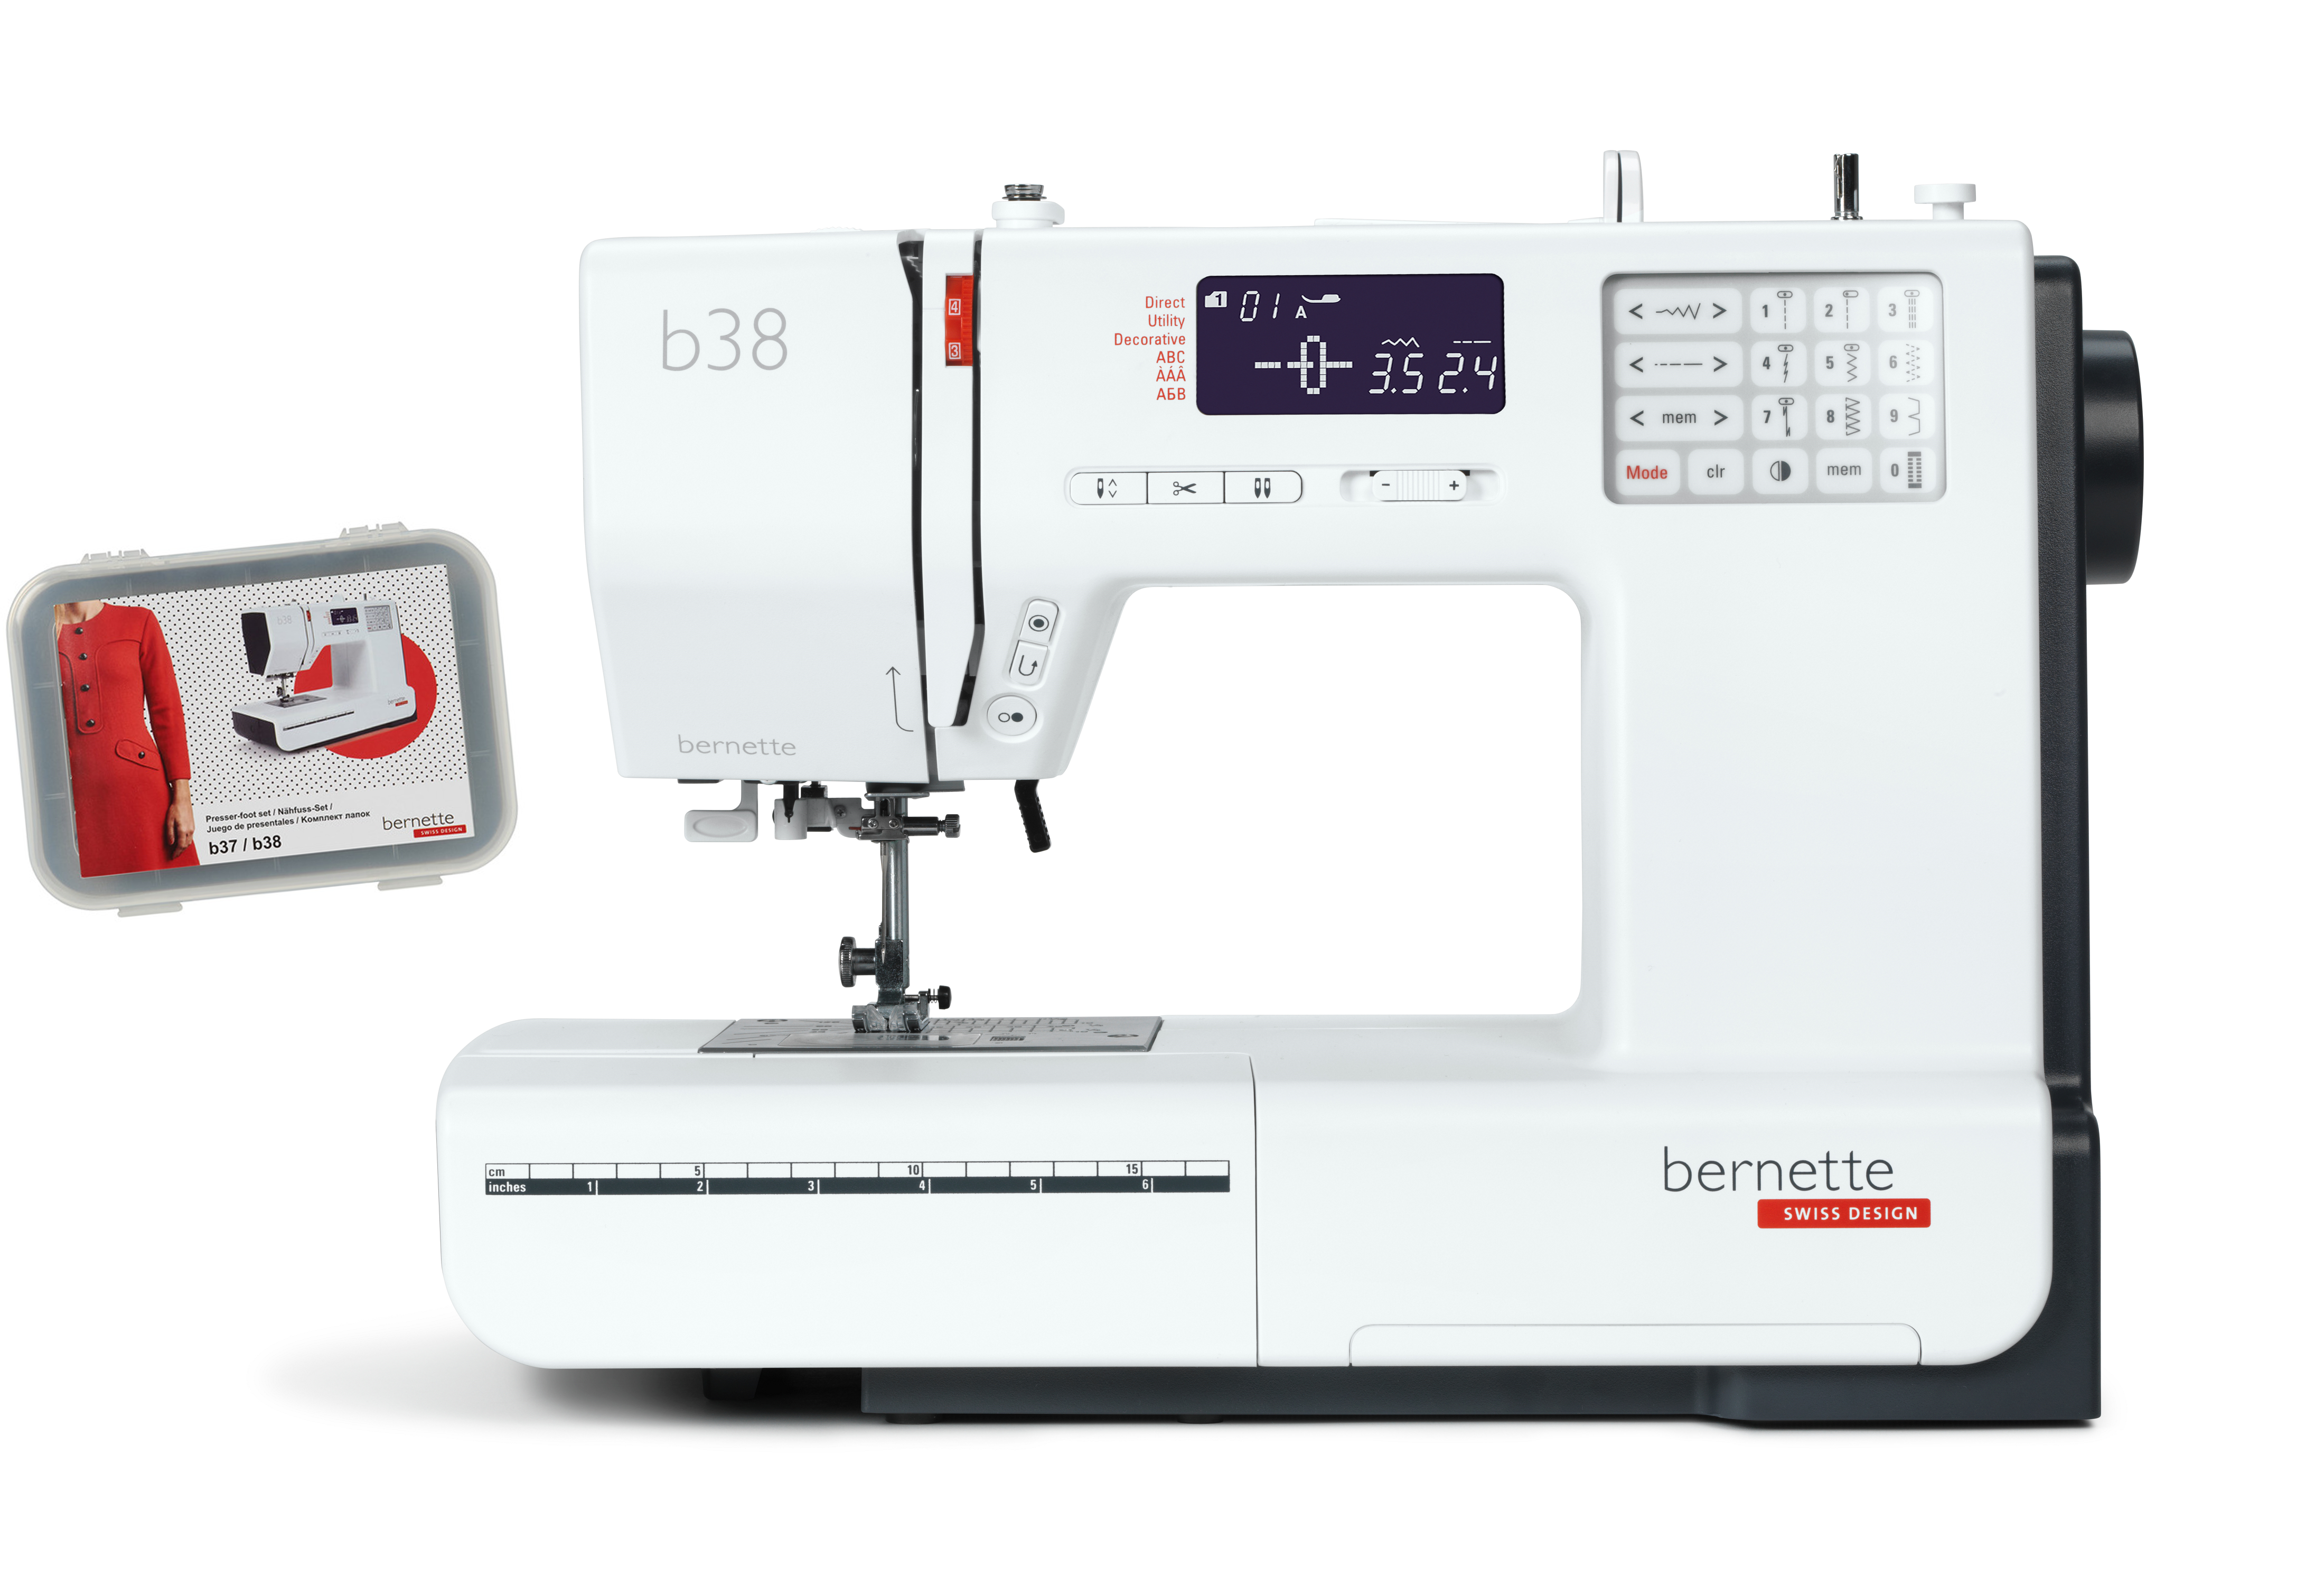 Bernette b38 Sewing Machine